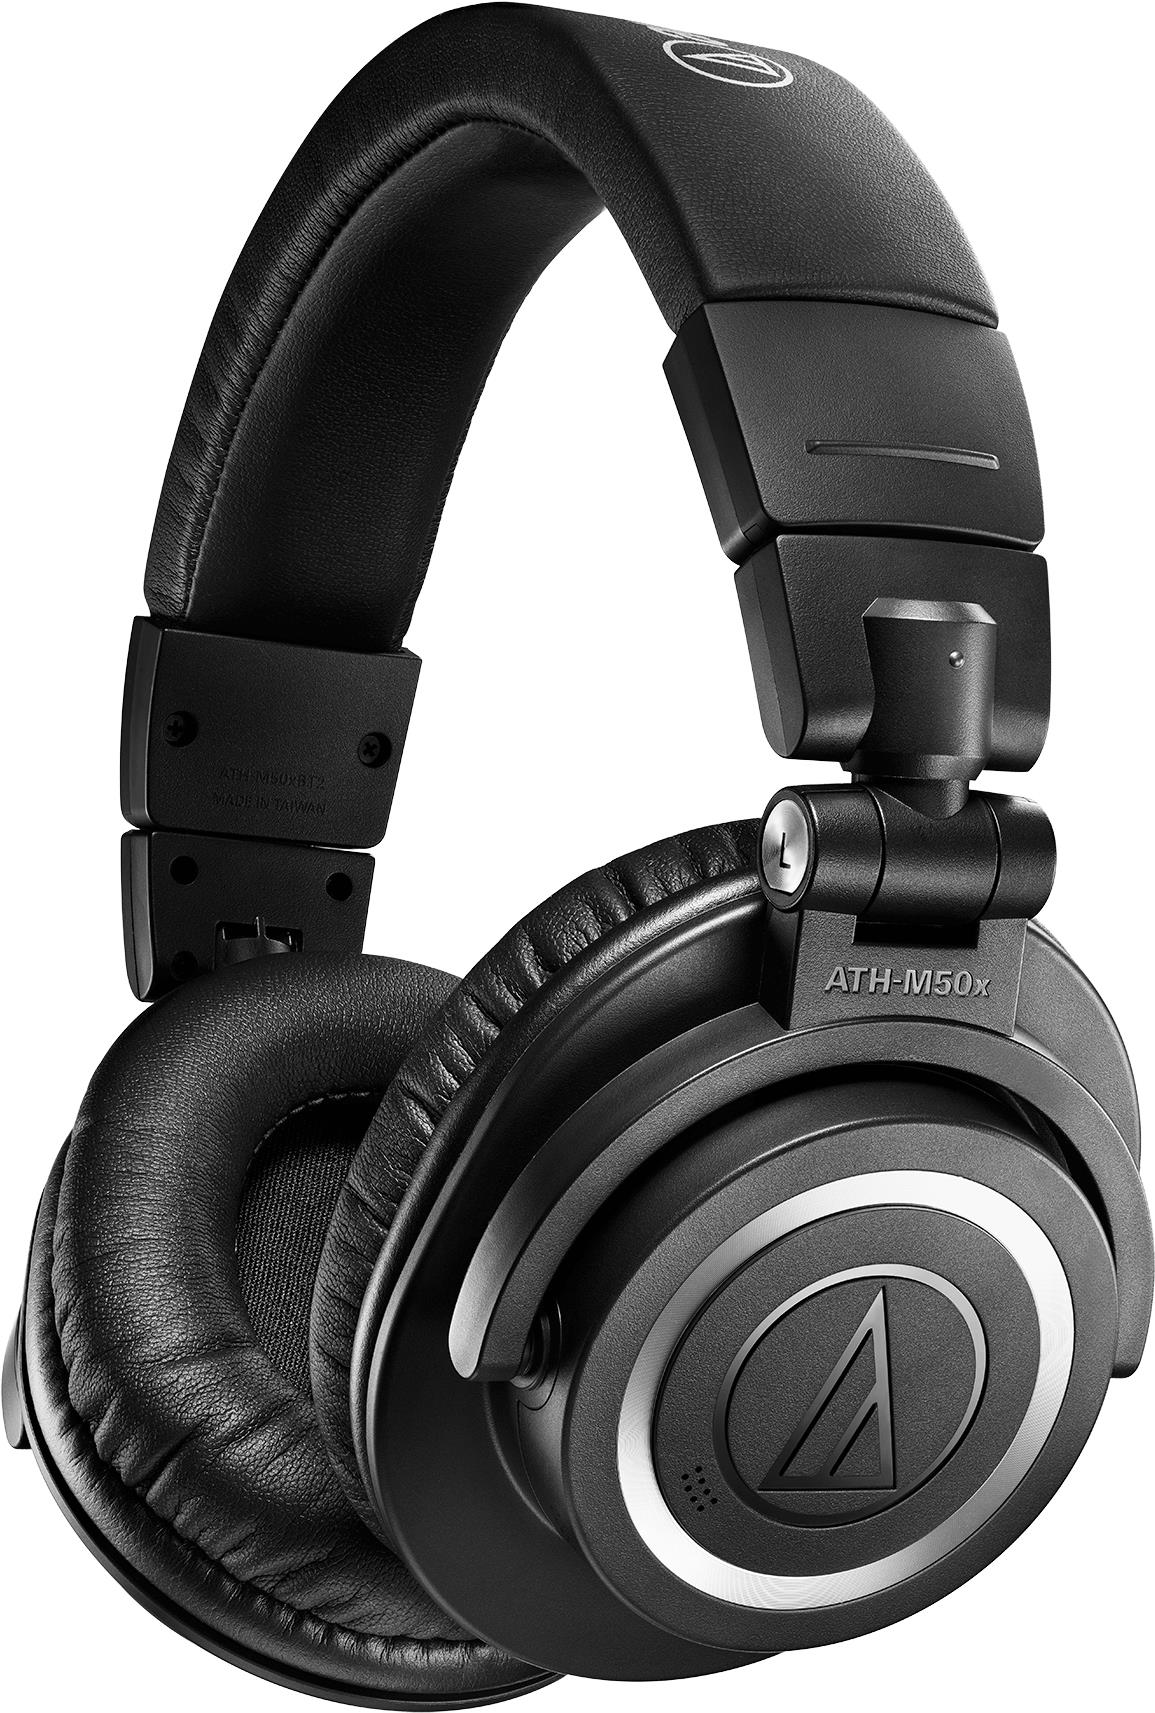 Audio-Technica ATH-M50XBT2. Produkttyp: Kopfhörer. Übertragungstechnik: Kabellos, Bluetooth. Empfohlene Nutzung: Musik. Gewicht: 307 g. Produktfarbe: Schwarz (ATH-M50XBT2)